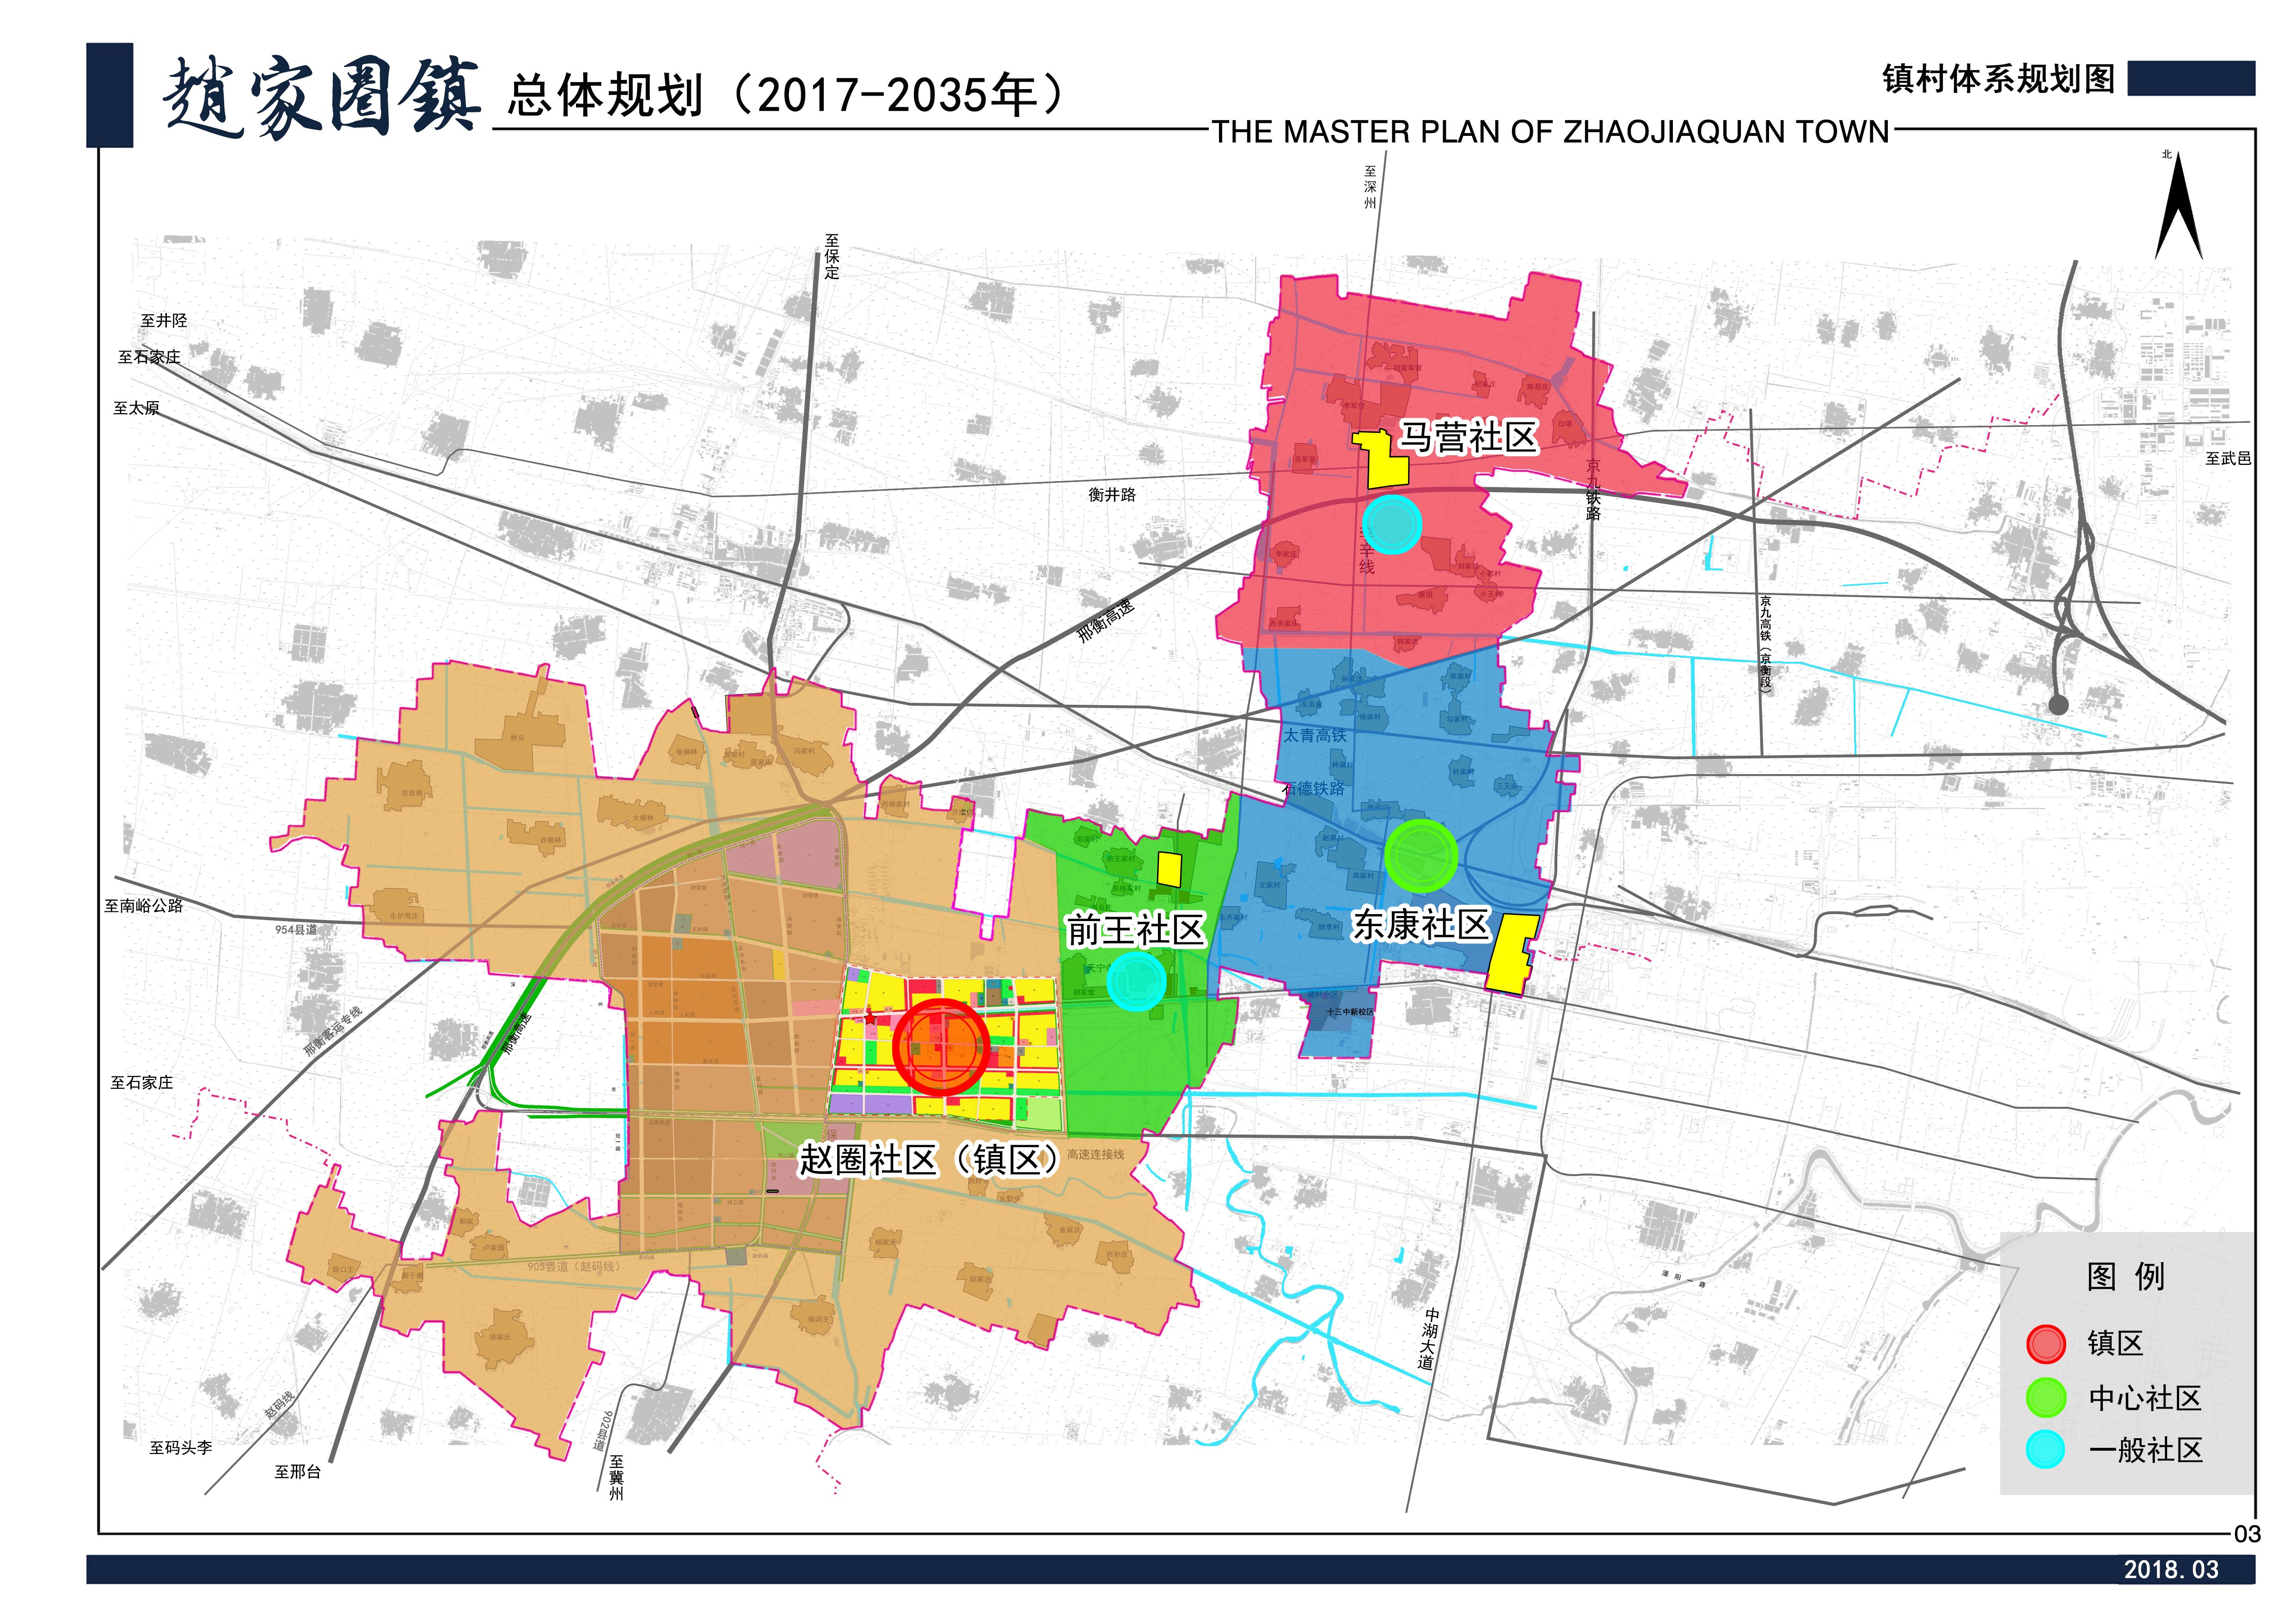 衡水市桃城区赵家圈镇总体规划(2017-2035年)